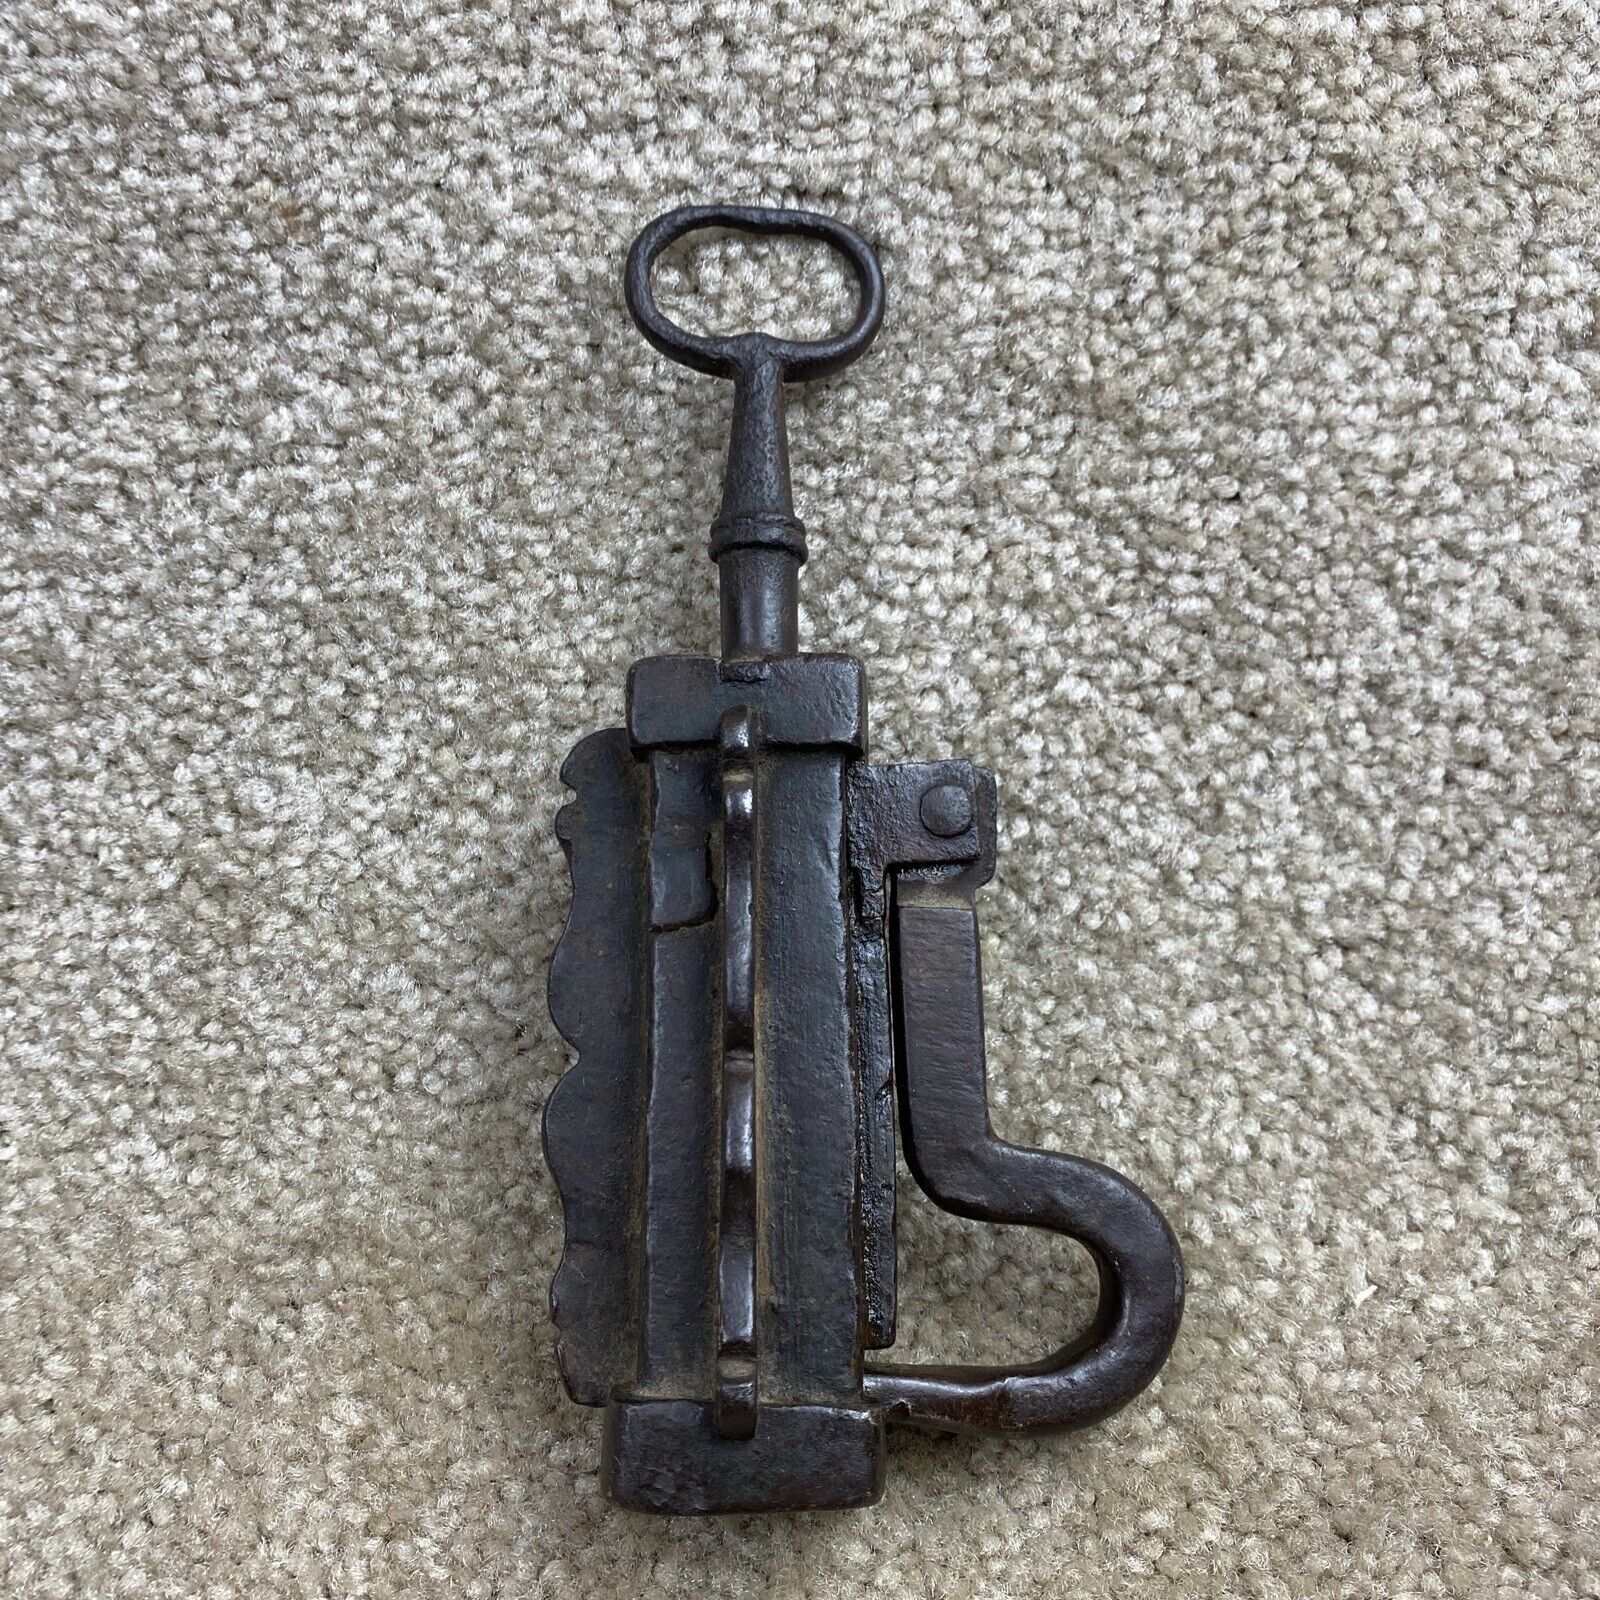 Antique Threaded Key “P” Lock Unusual Ornate Design